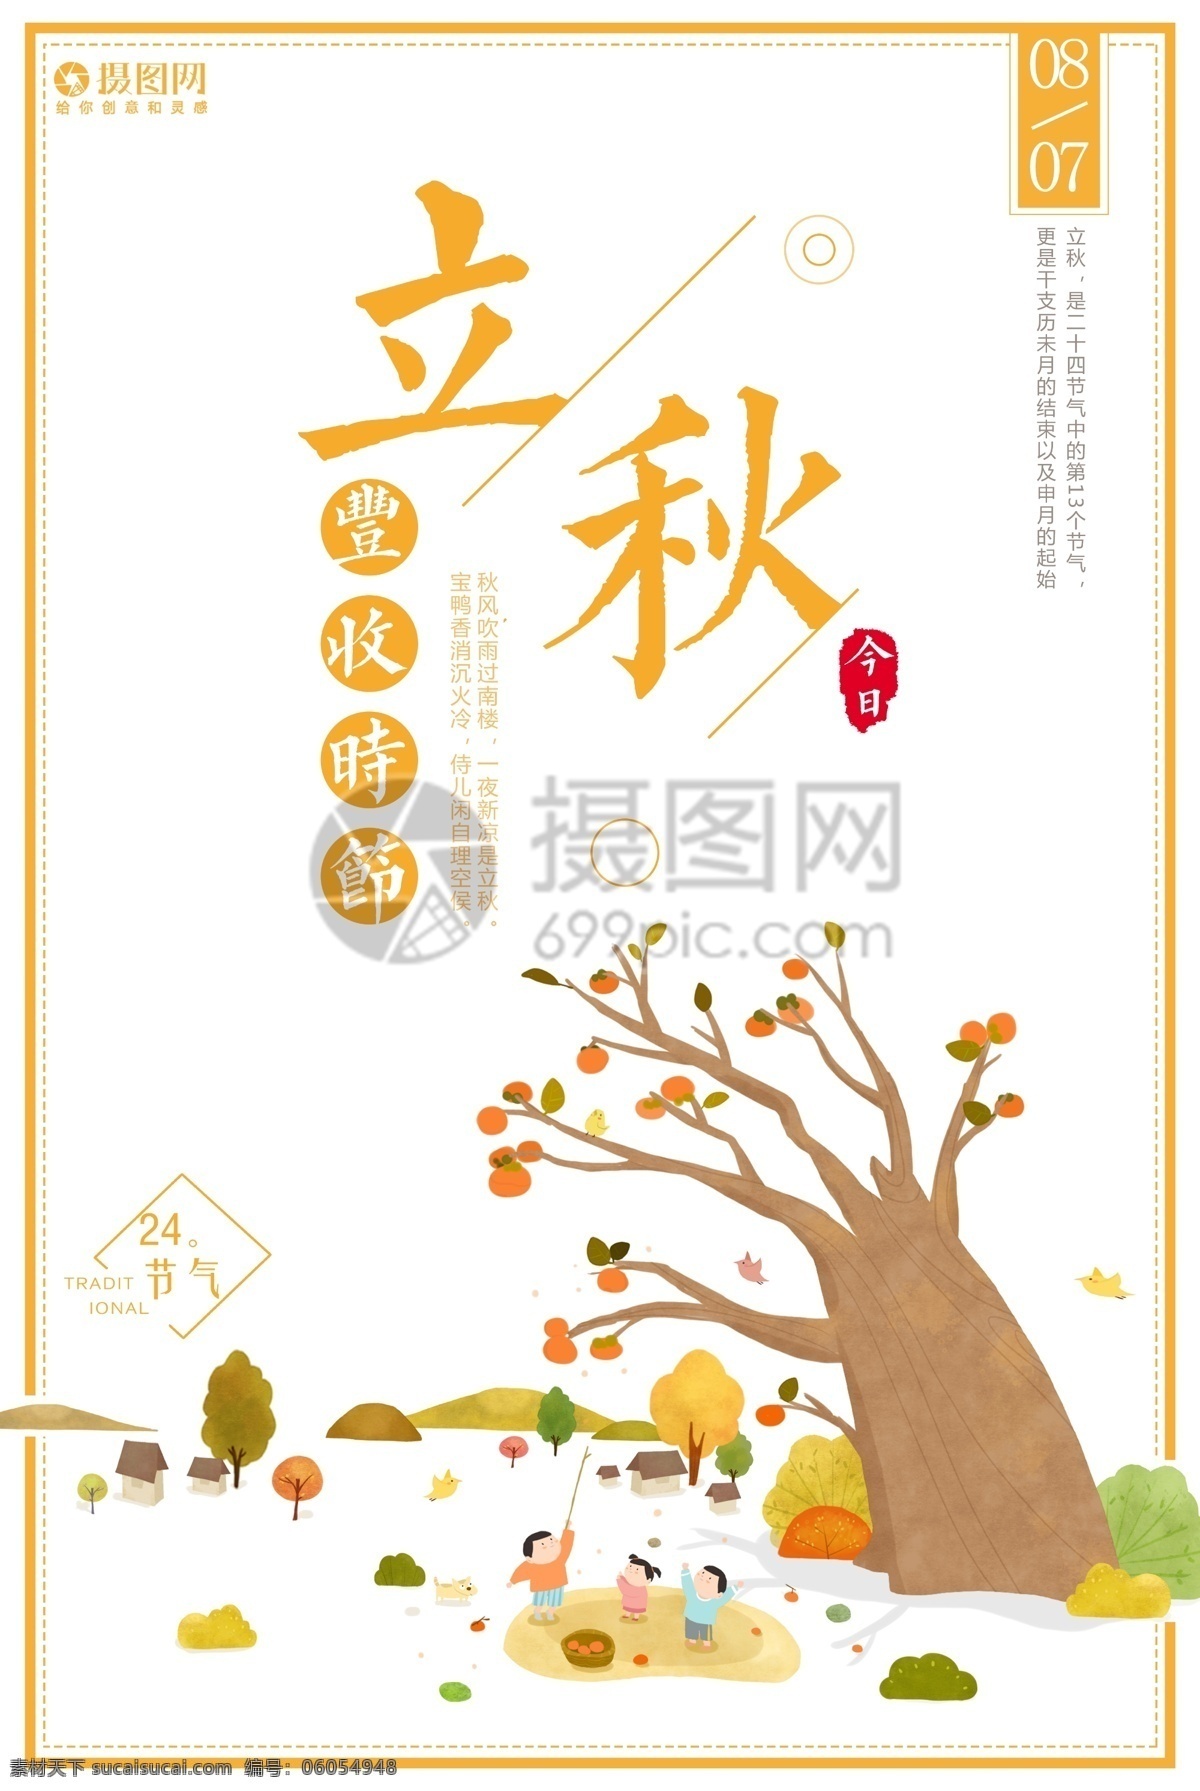 二十四节气 立秋 海报 秋天 秋意 秋季 枫叶 黄色 中国传统节气 节气海报